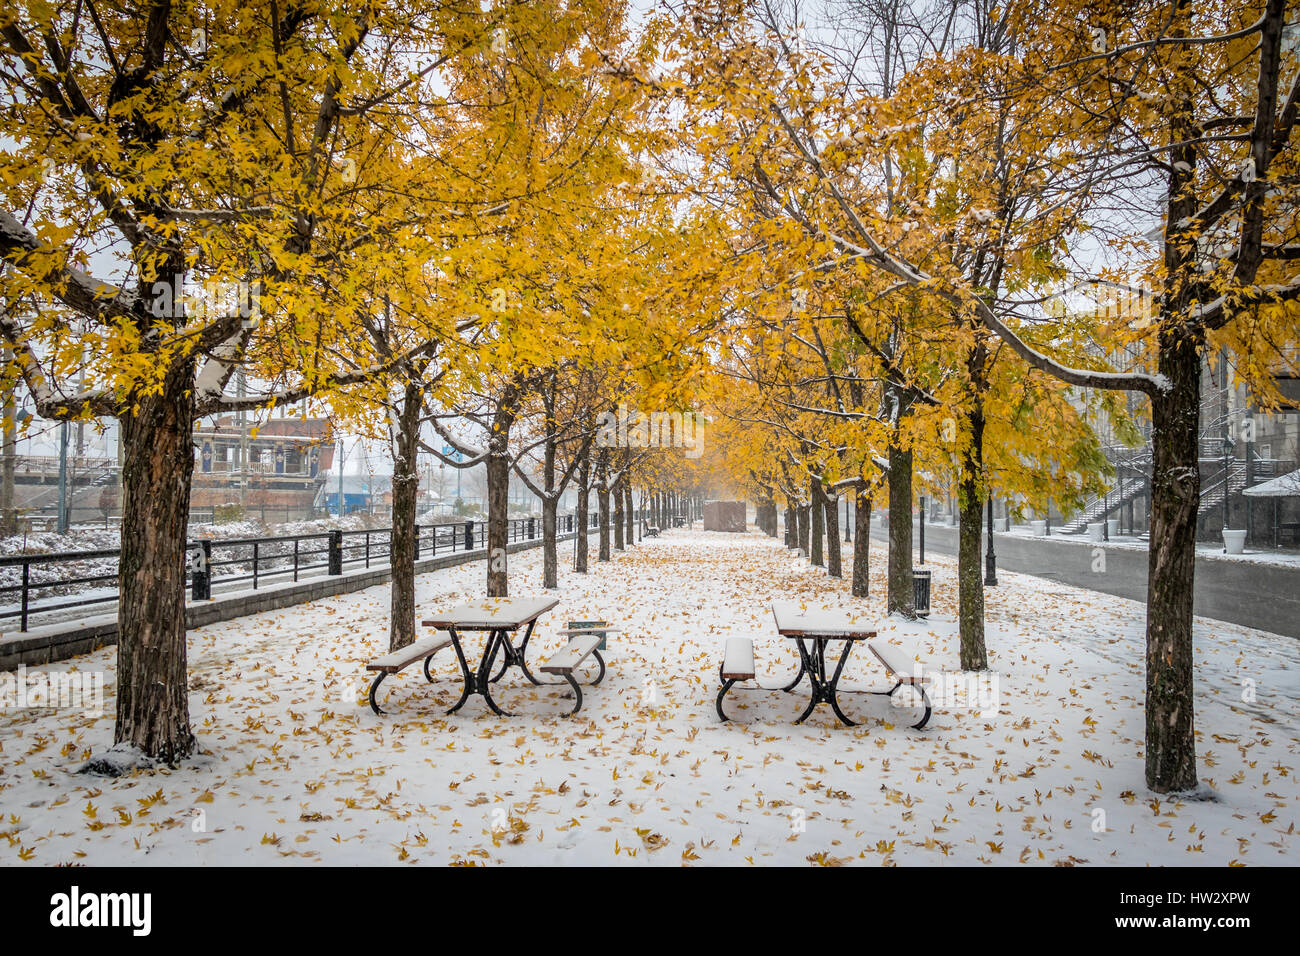 Passerelle sur la première neige avec des feuilles jaunes tombant des arbres - Montréal, Québec, Canada Banque D'Images